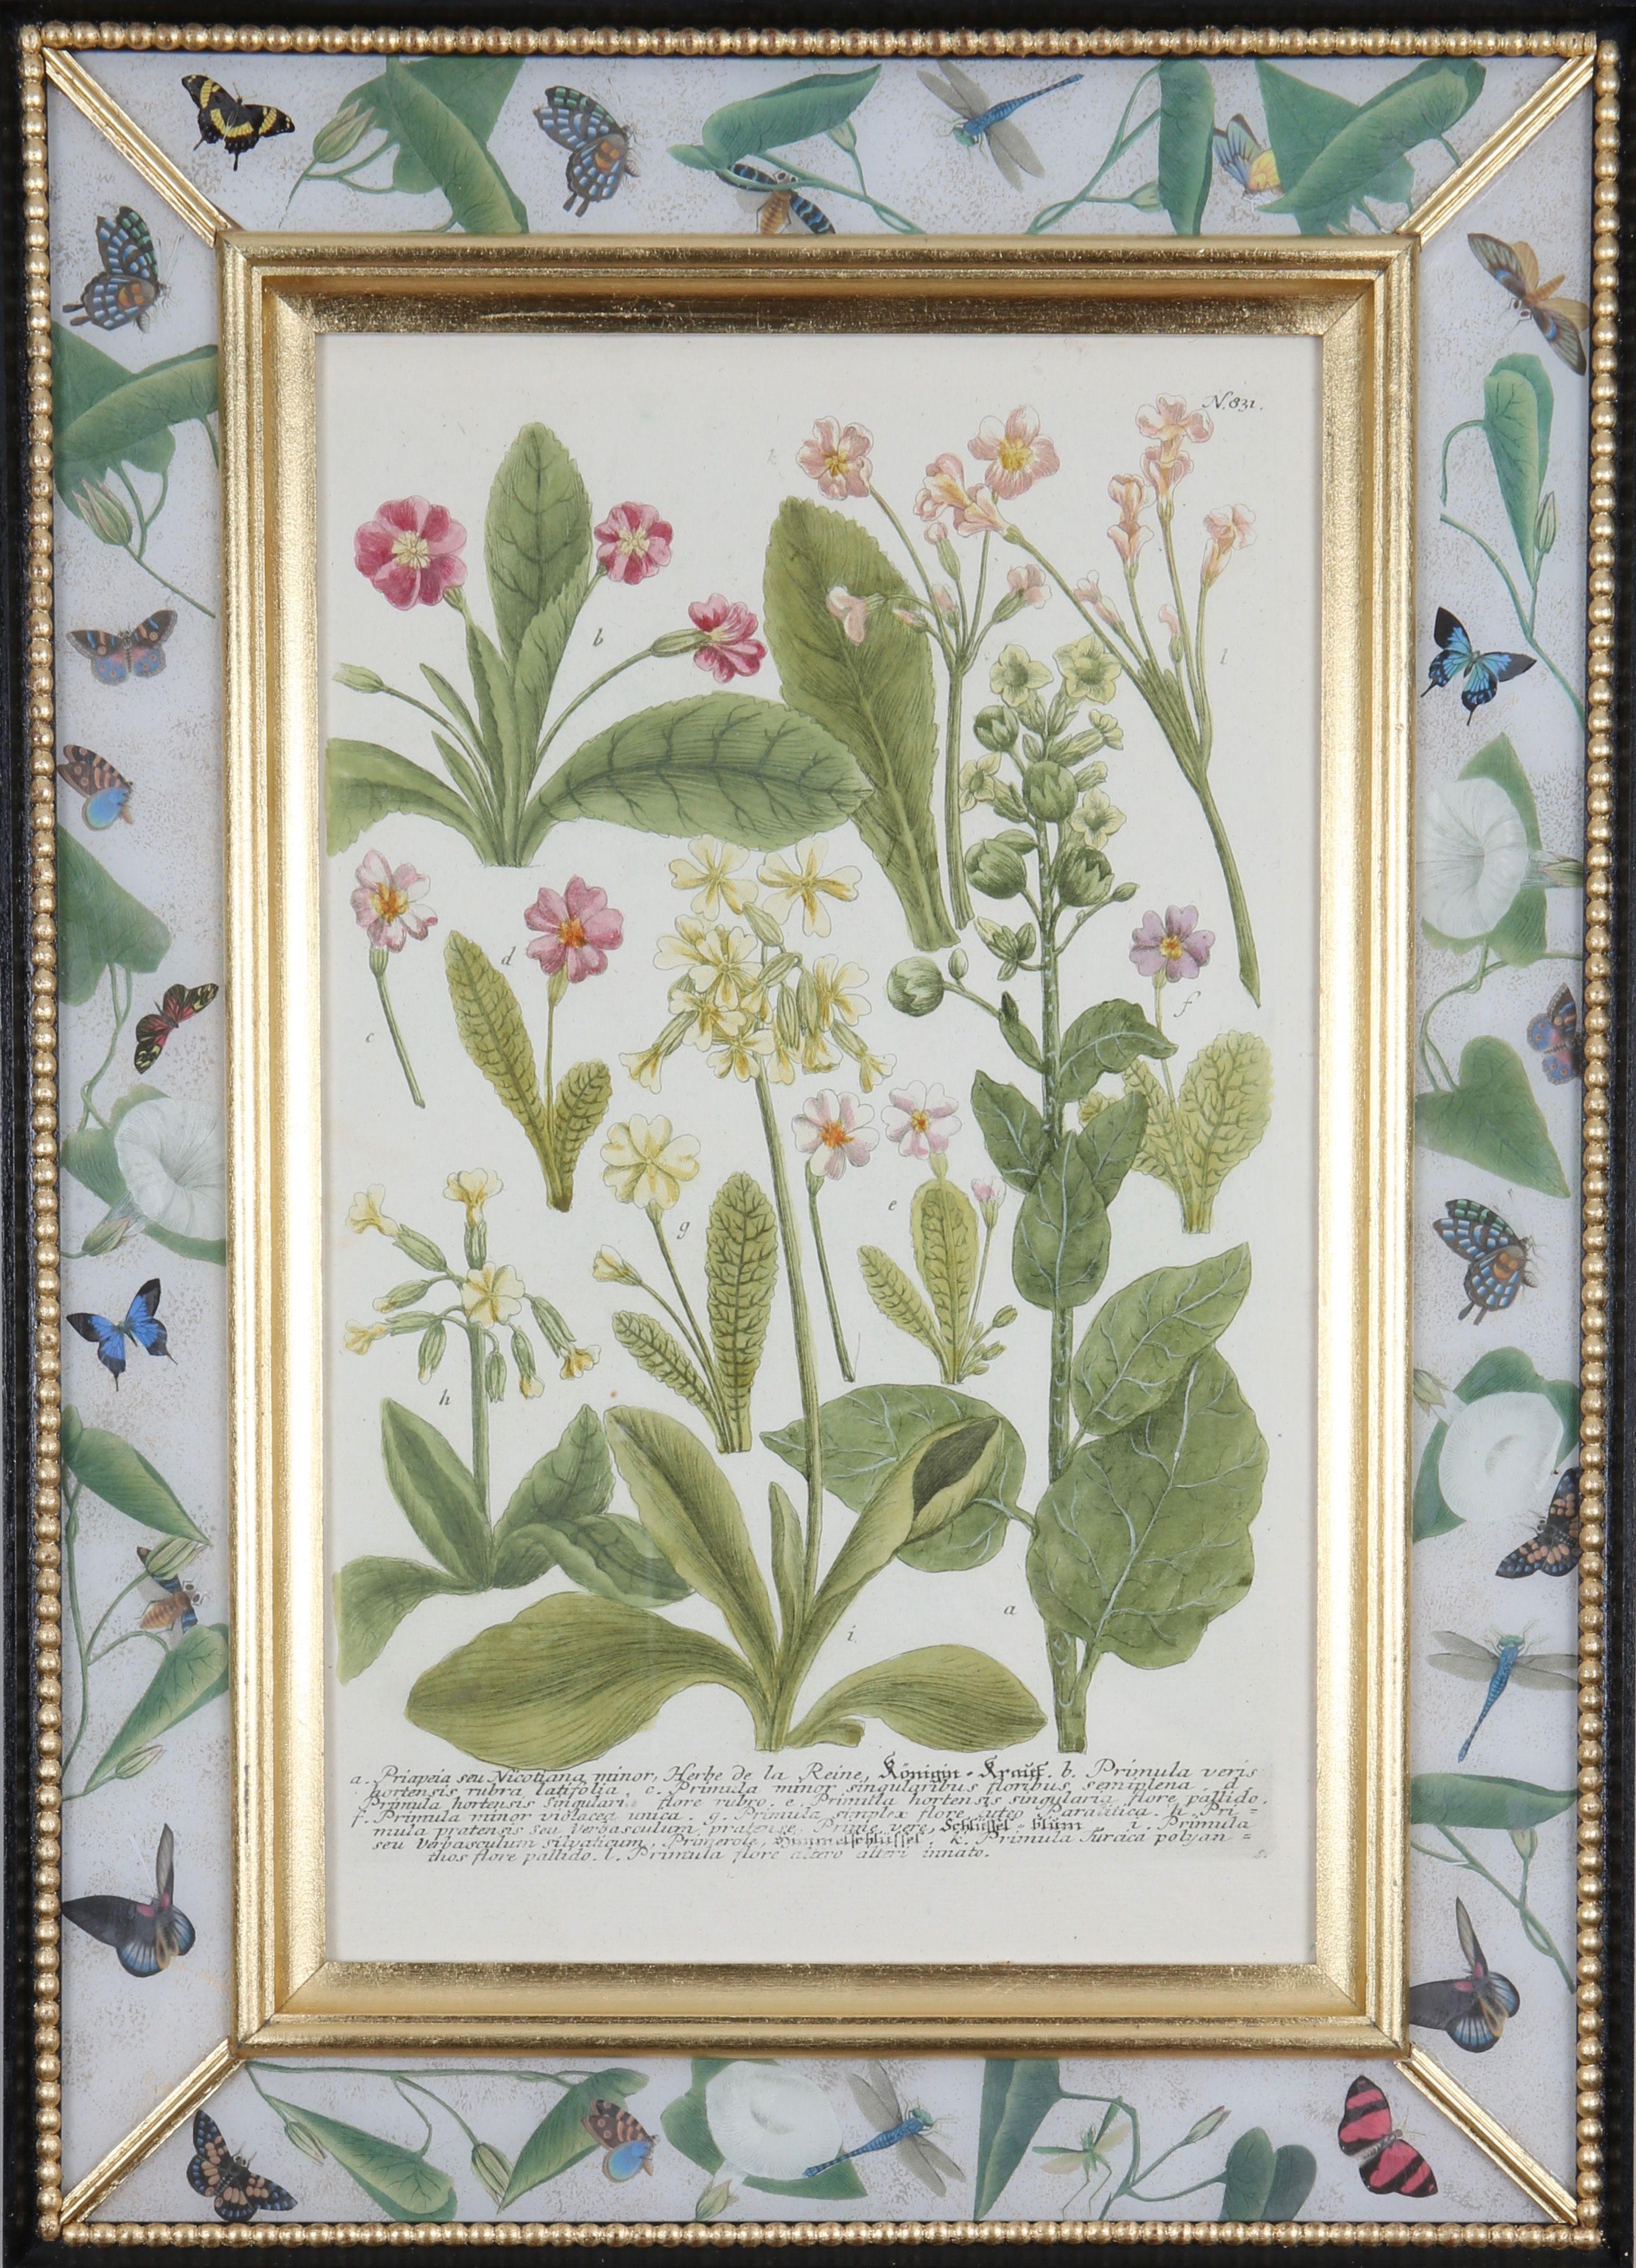 Une merveilleuse sélection de  gravures mezzotintes coloriées à la main tirées de : "Phytanthoza Iconographia",  c1739, présentés dans des cadres artisanaux en or jaune, ébène et décalcomanie. 

Johann Weinmann (1683-1741), pharmacien et apothicaire